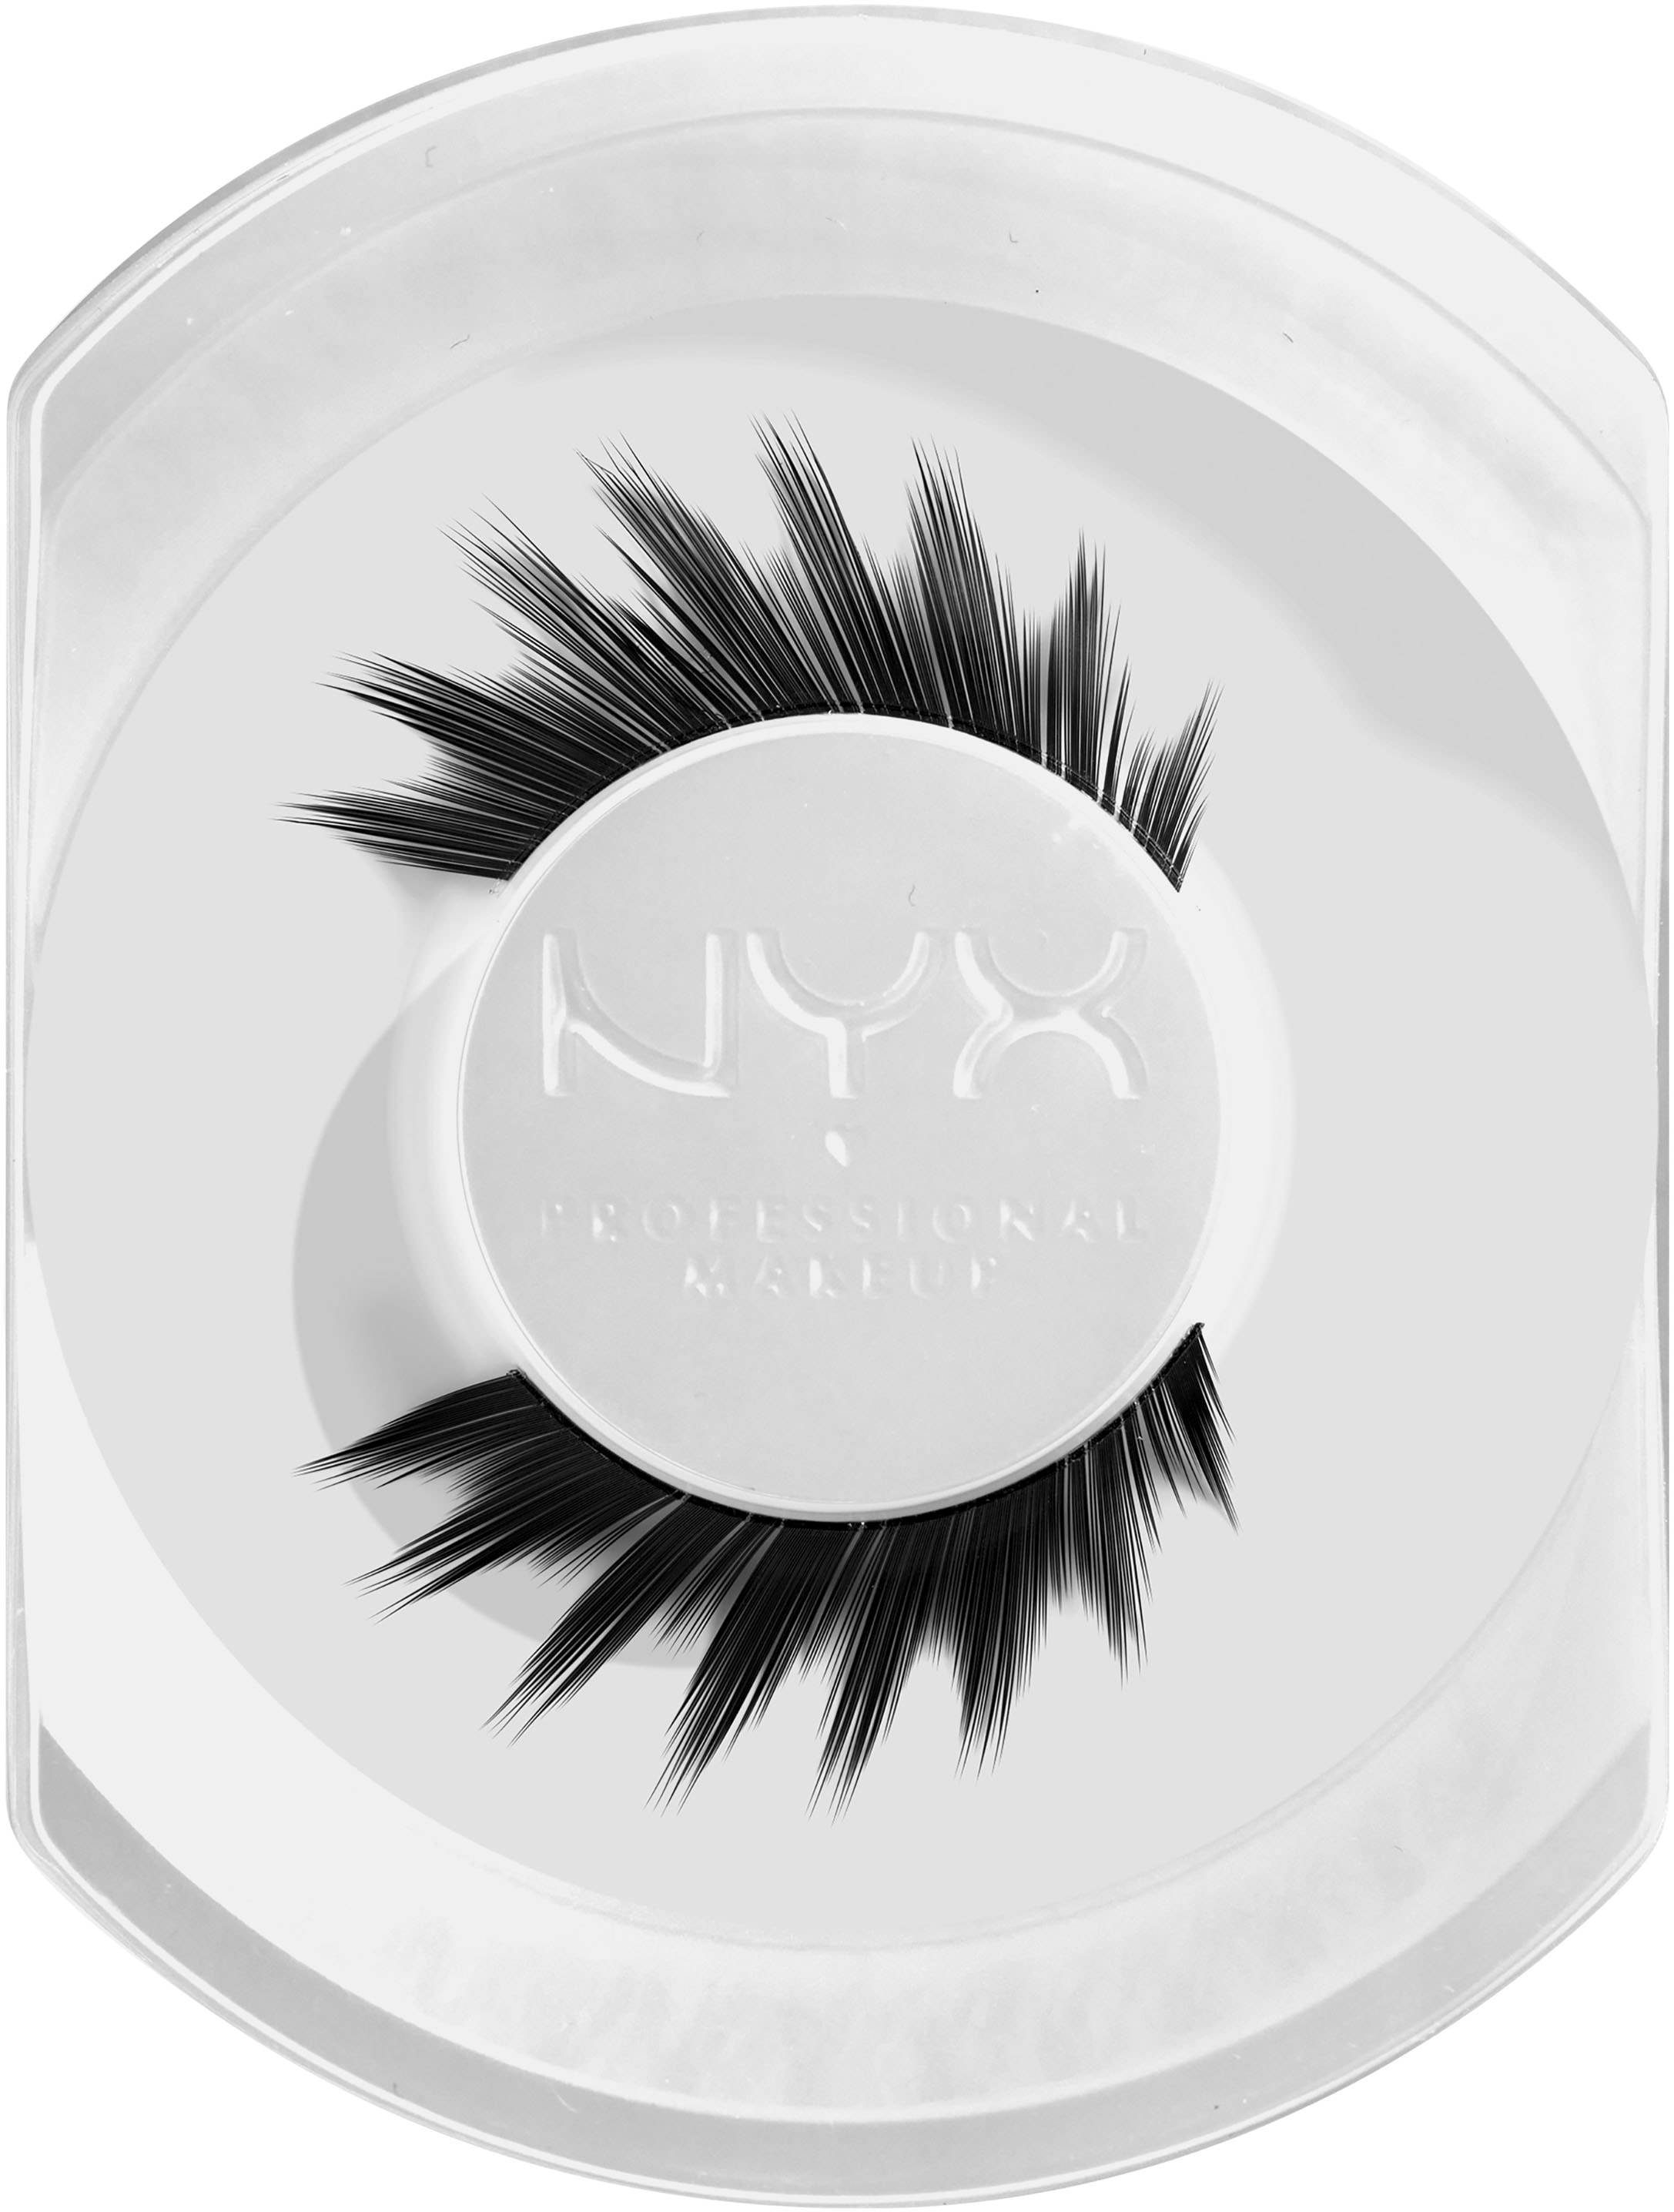 NYX Bandwimpern »NYX Professional Makeup Halloween Jumbo Lash Spiky Fringe«